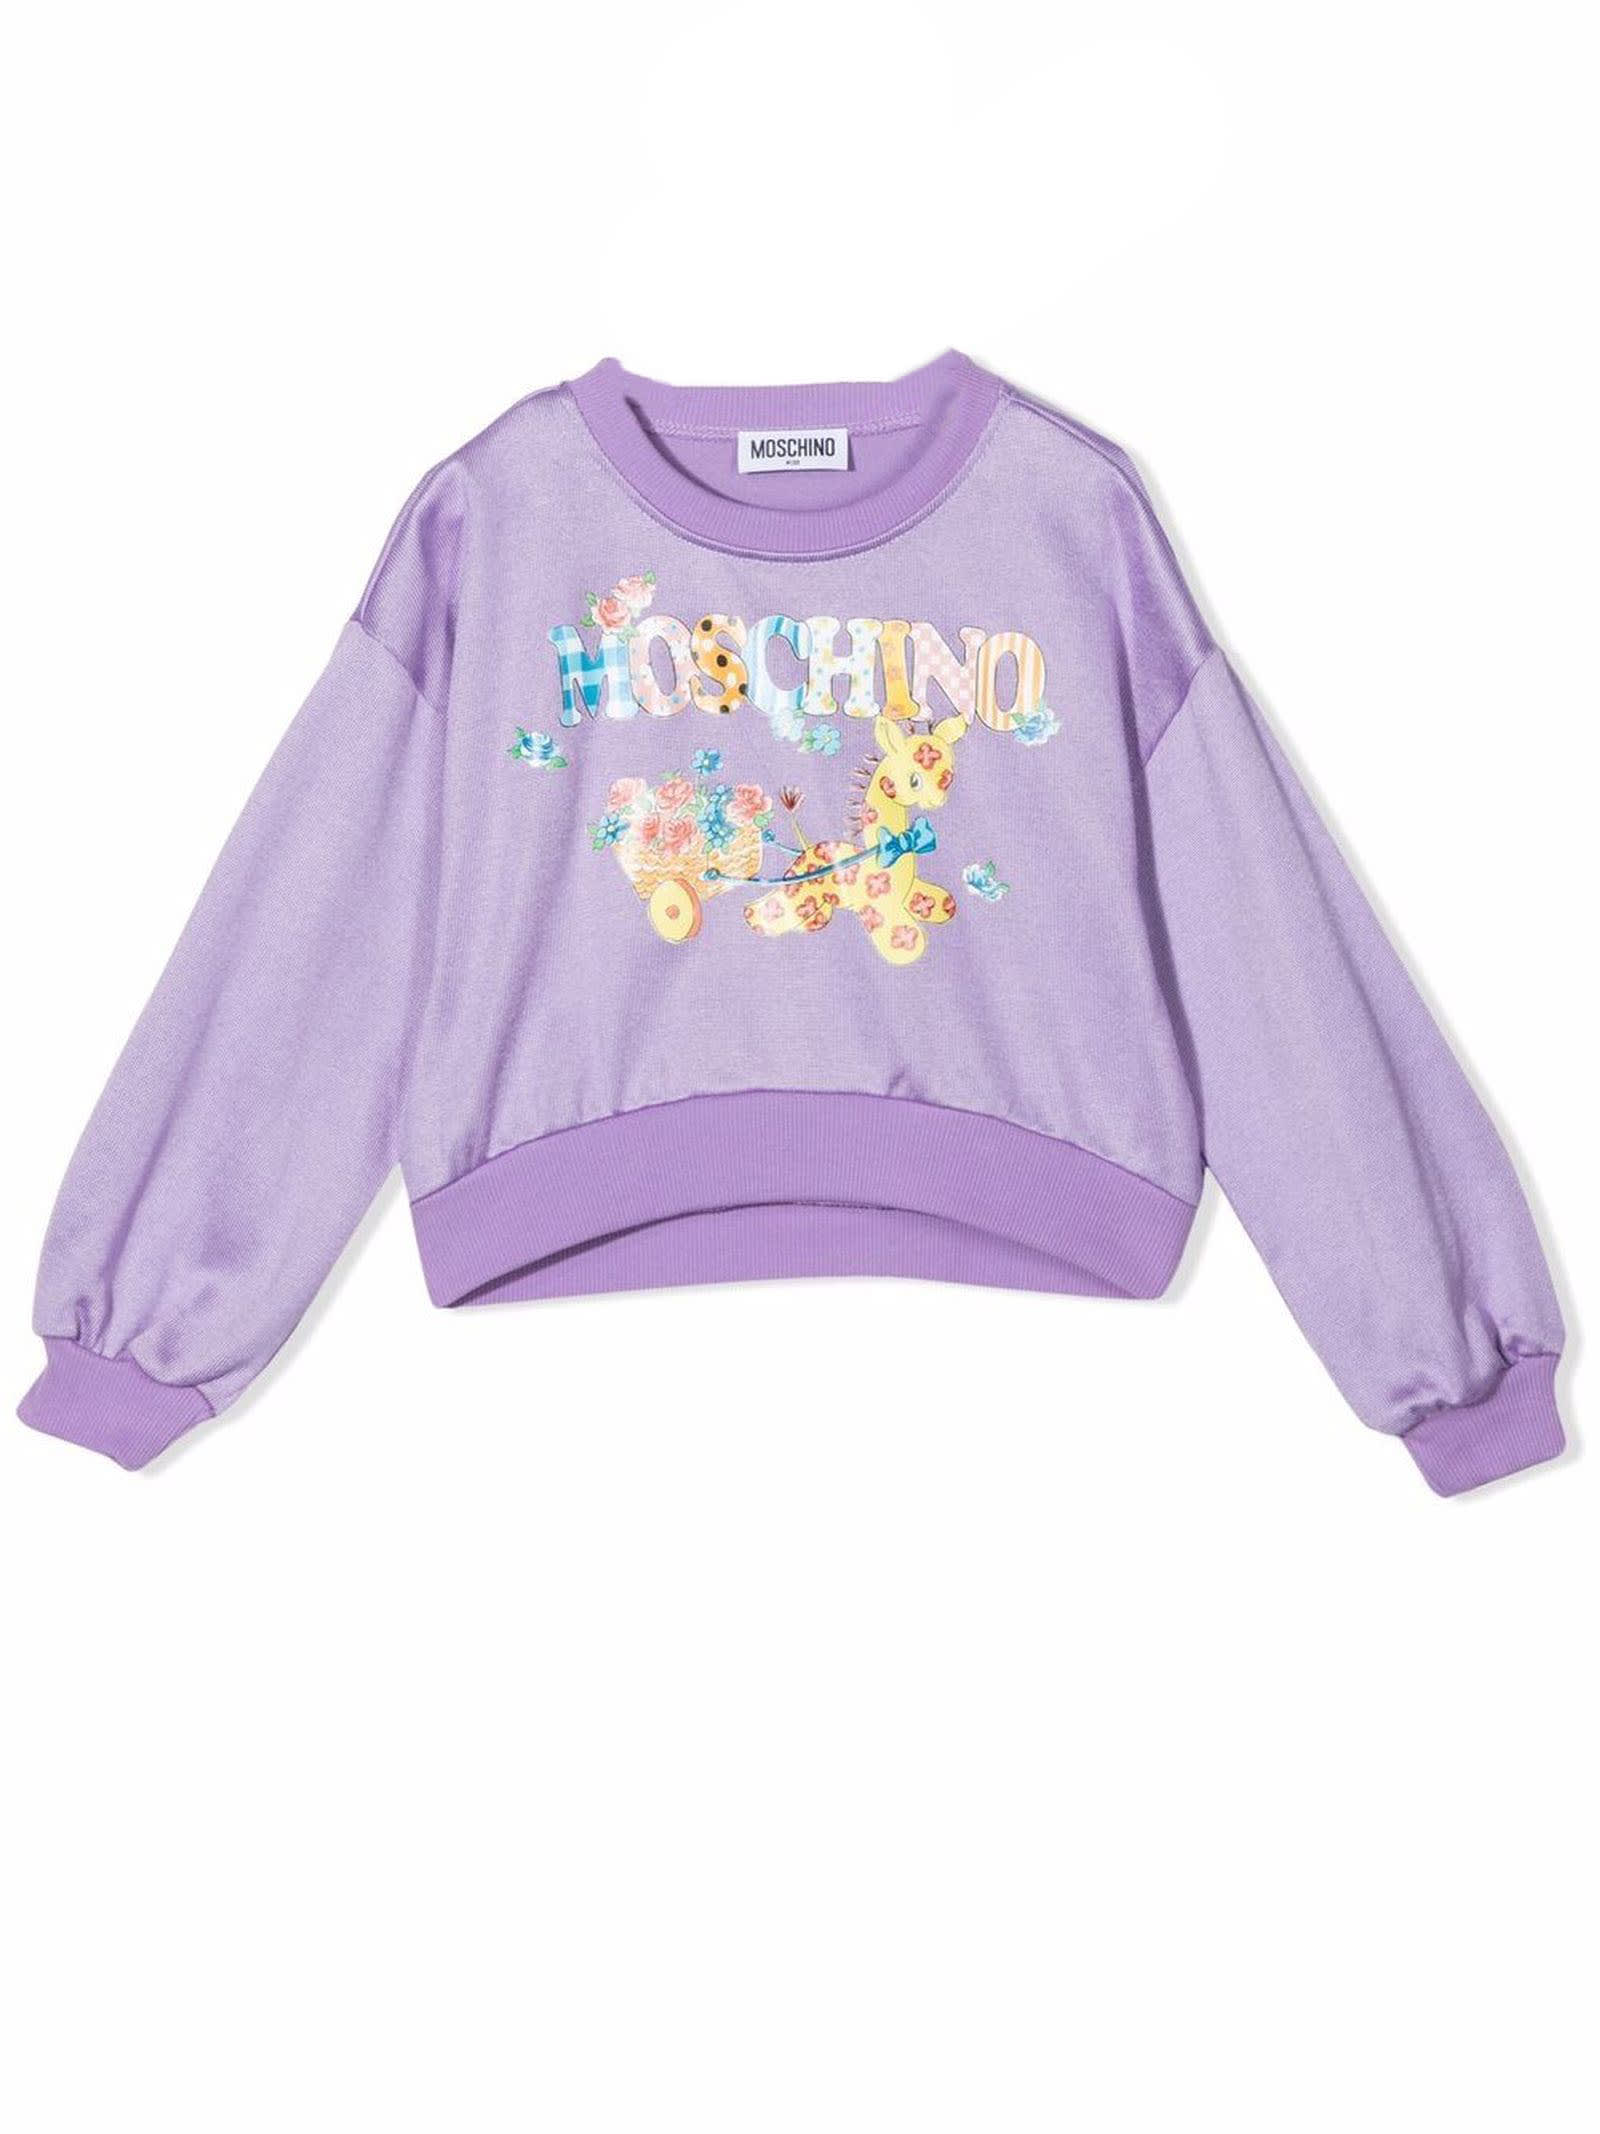 Moschino Lilac Cotton Sweatshirt